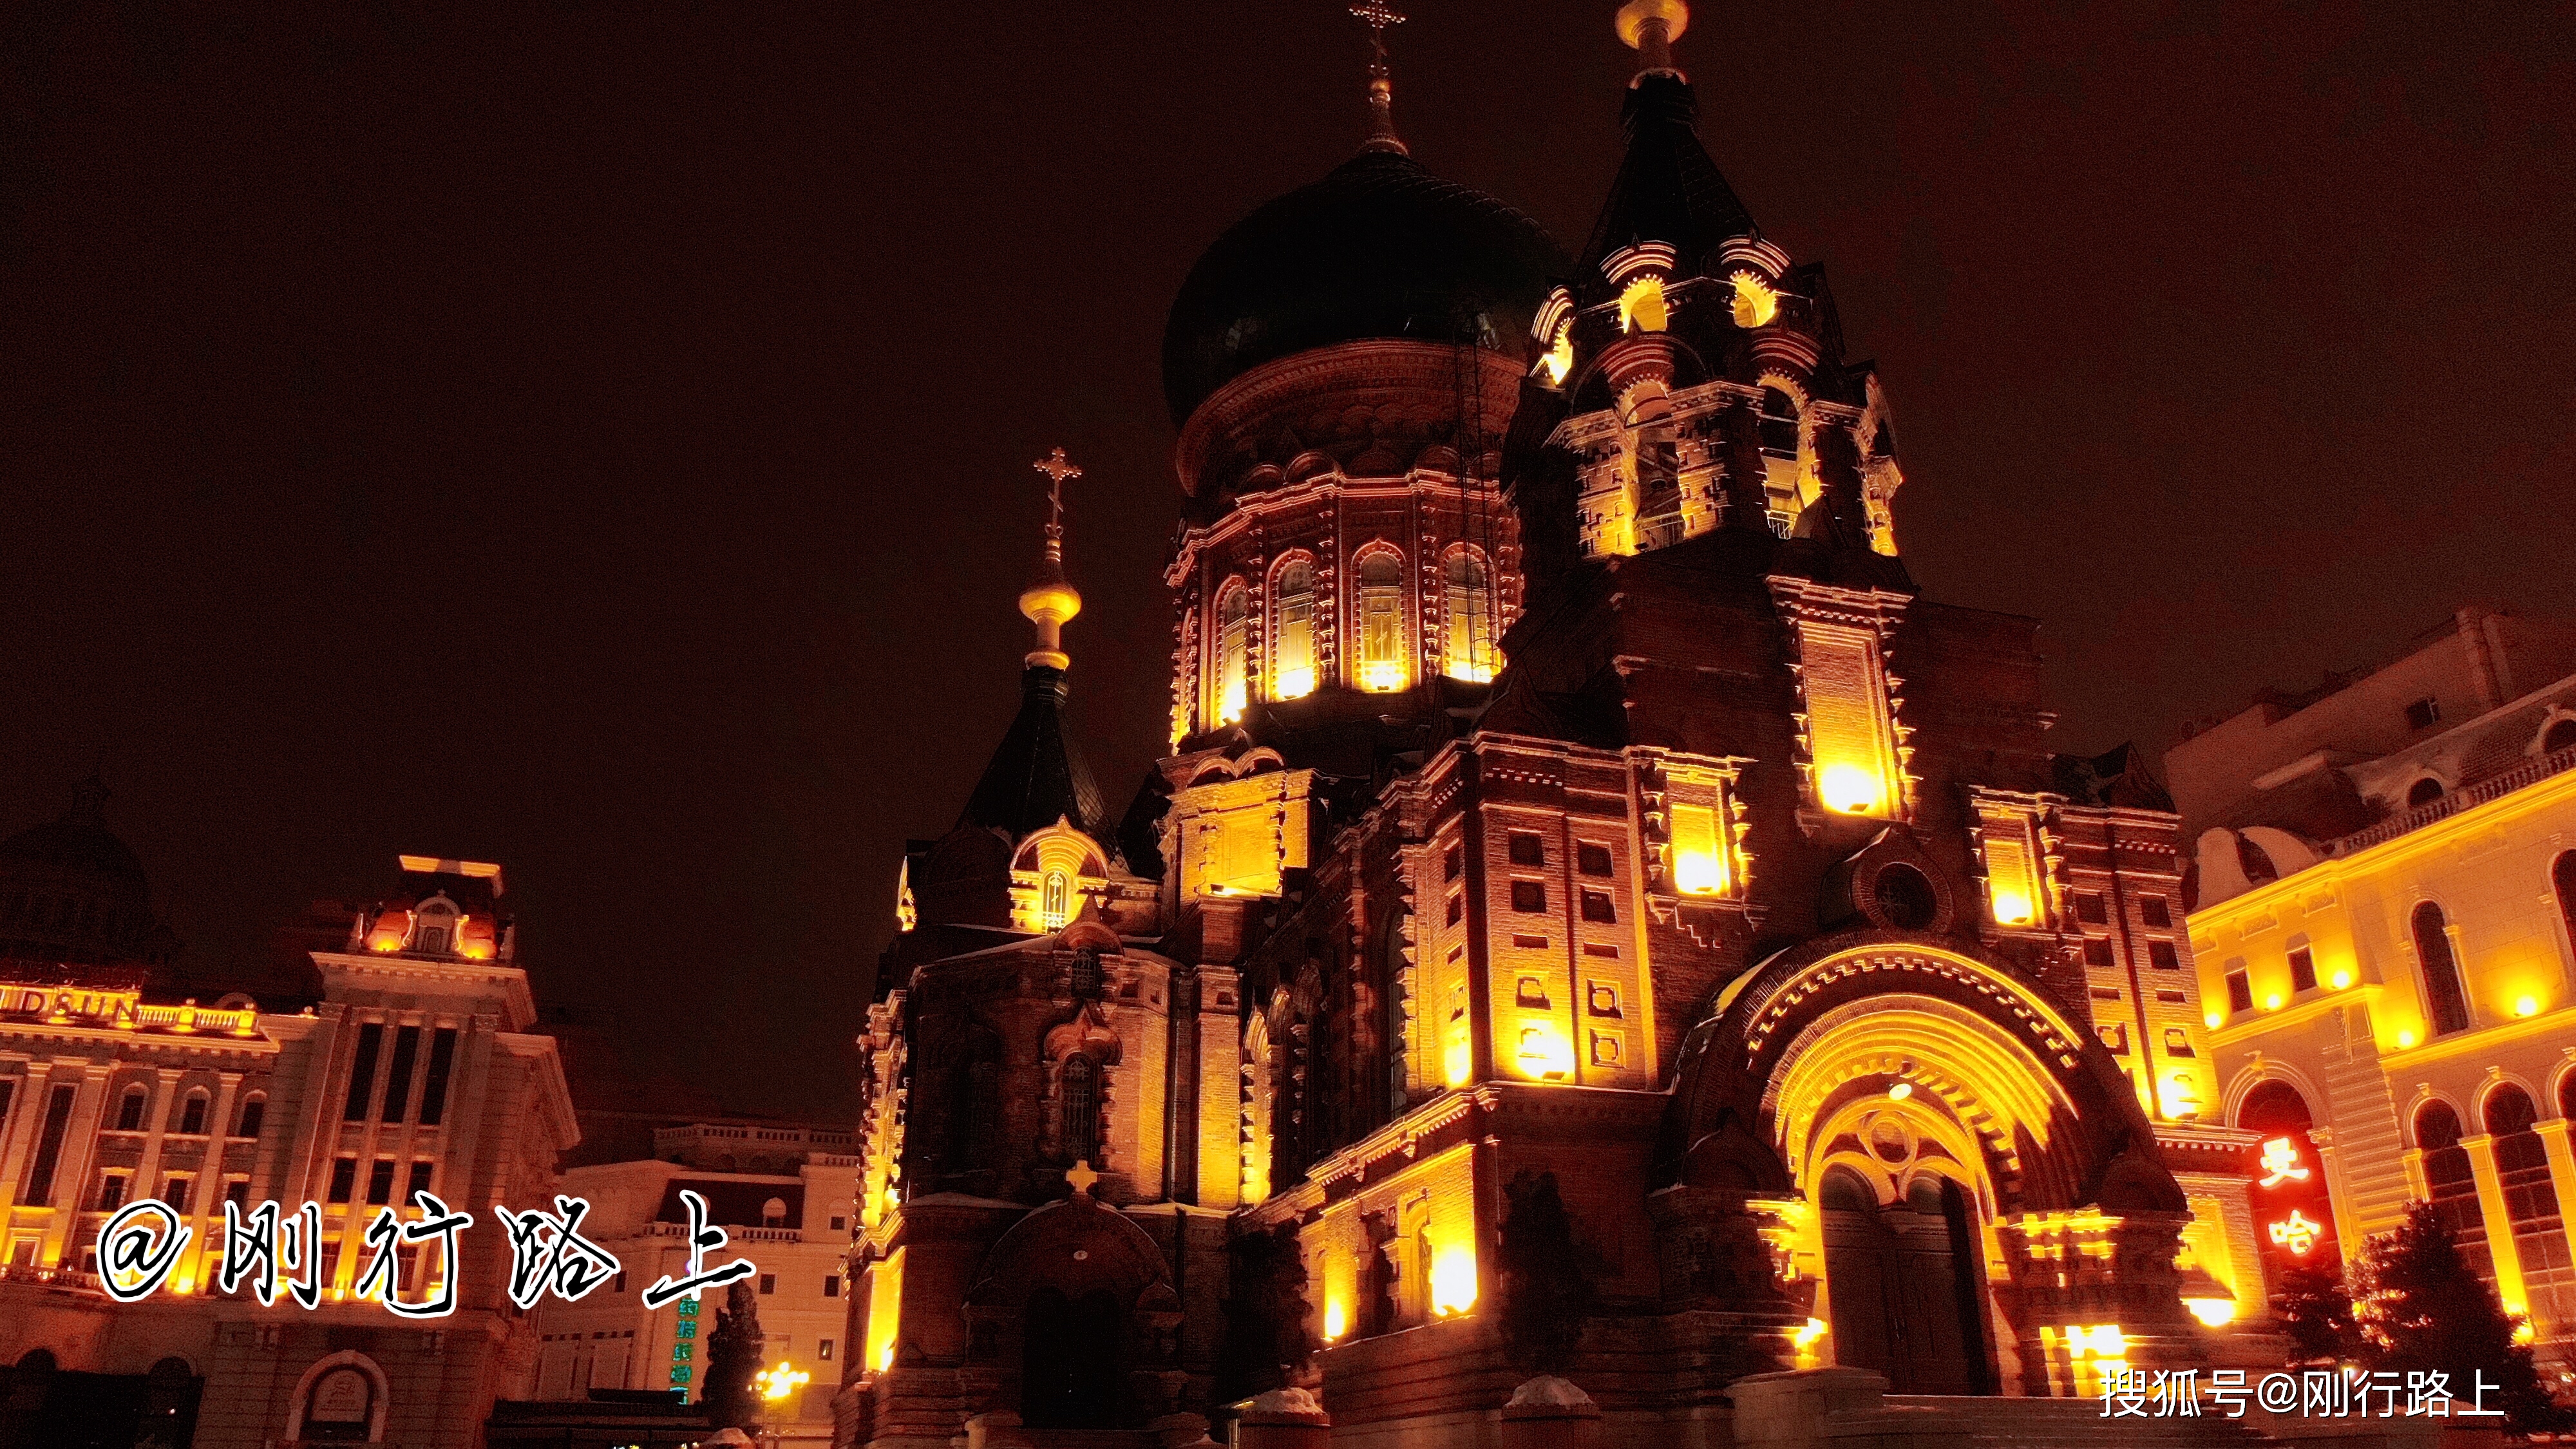 索菲亚教堂广场，夜色下的建筑景观更让人着迷